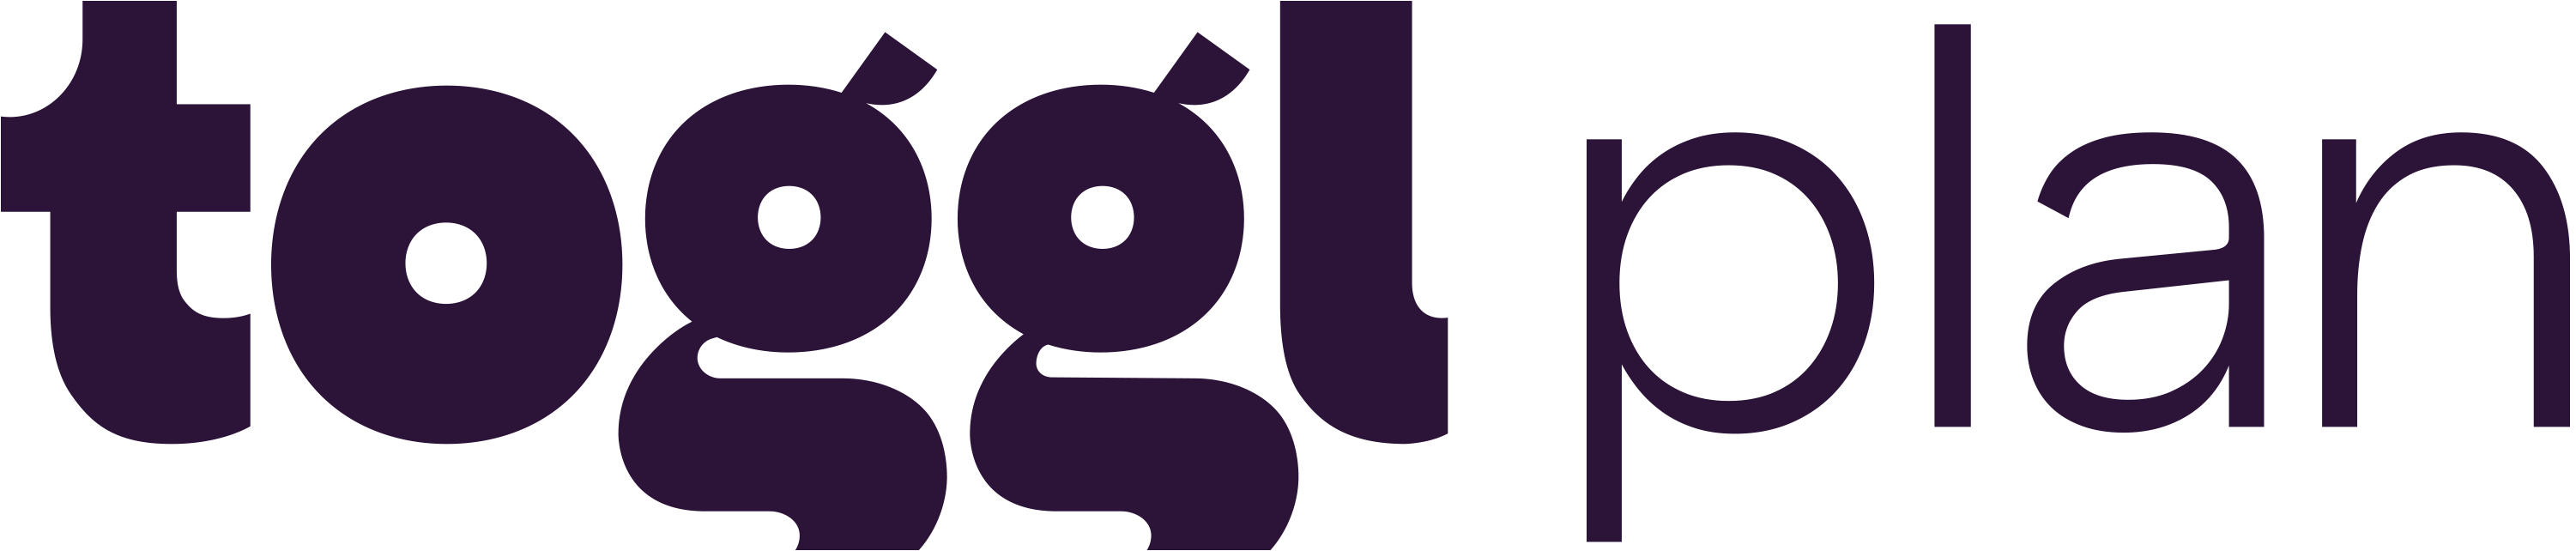 toggl plan logo